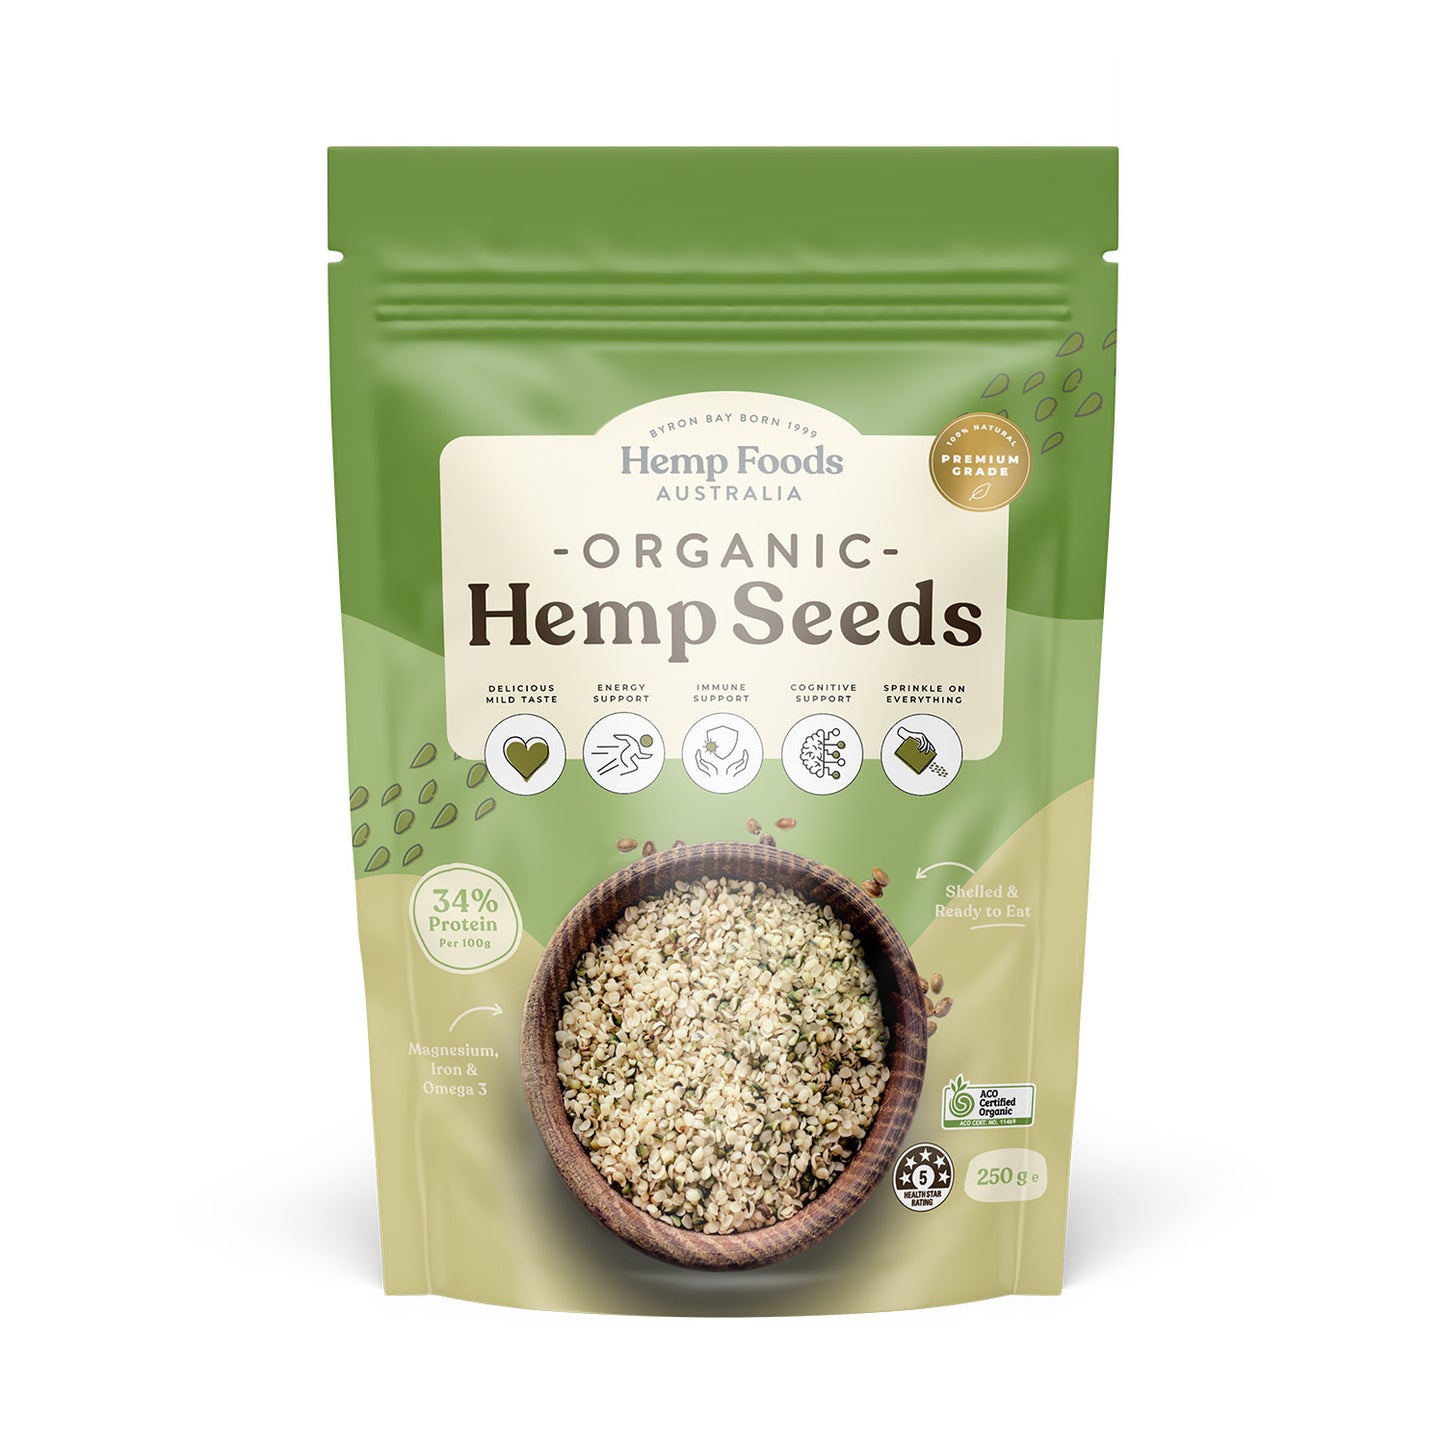 Hemp Foods Australia Hulled Hemp Seeds 114g, 250g Or 1kg, Certified Organic